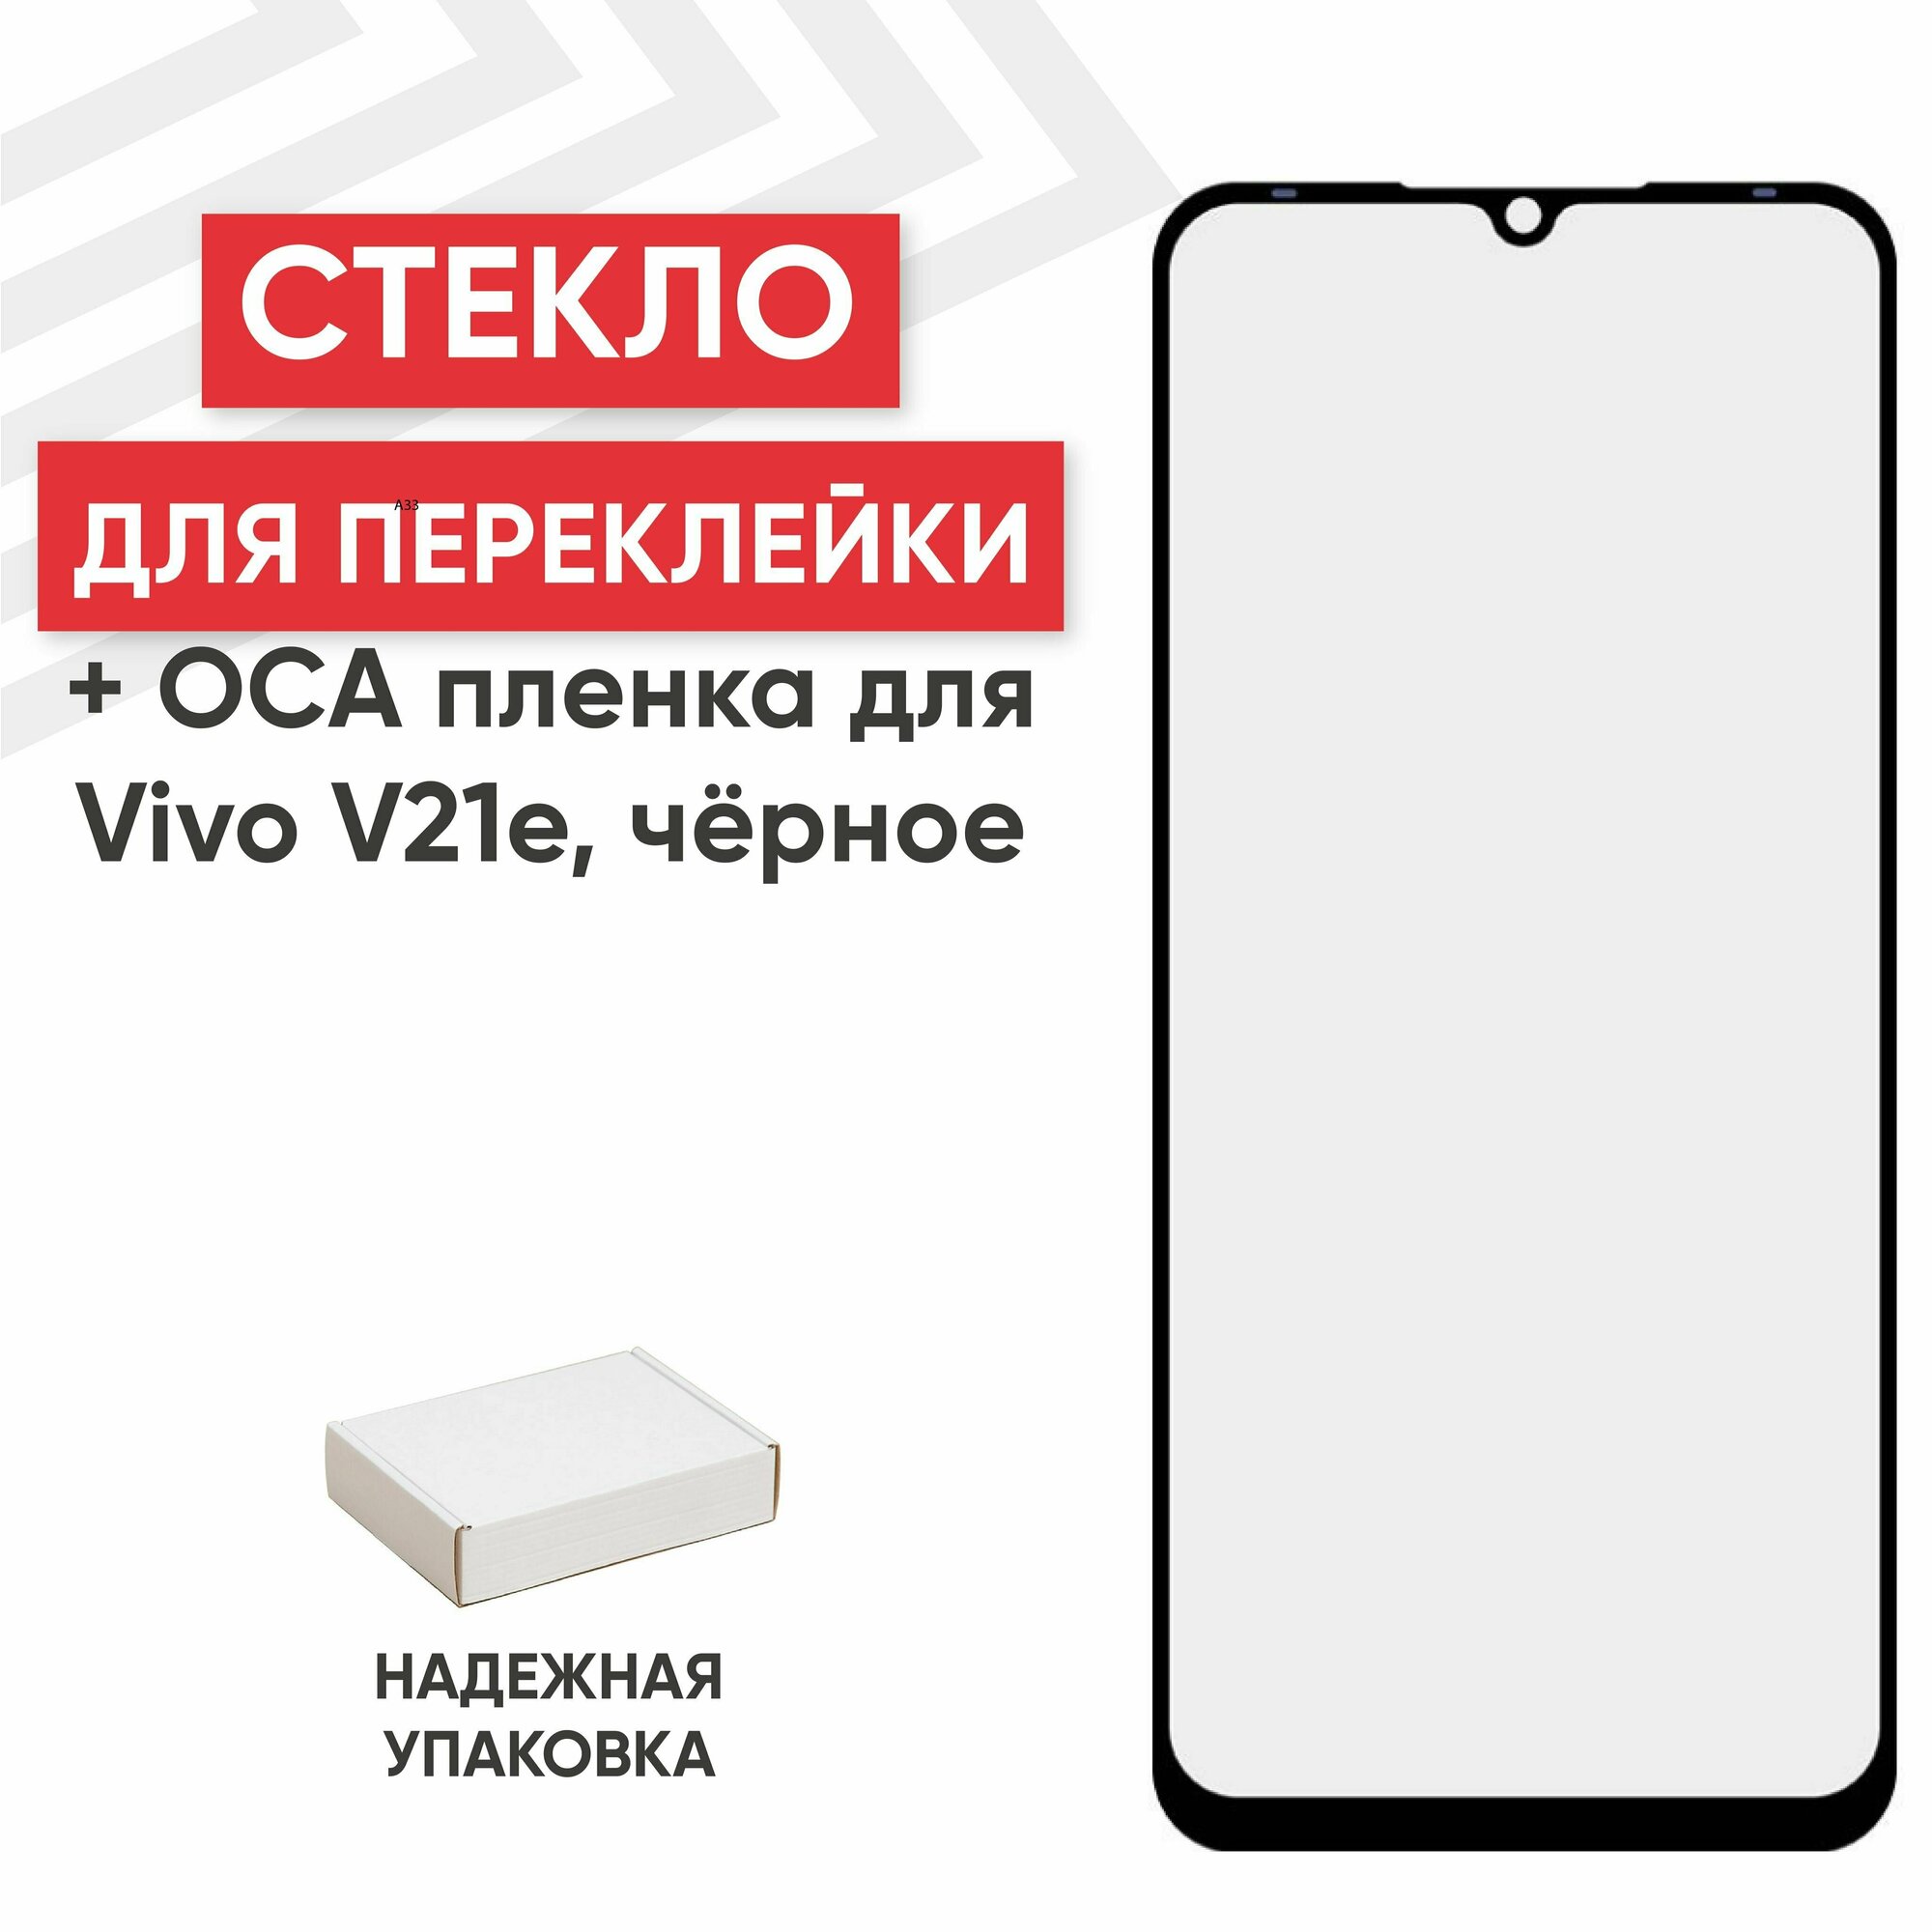 Стекло переклейки дисплея c OCA пленкой для мобильного телефона (смартфона) Vivo V21e, черное